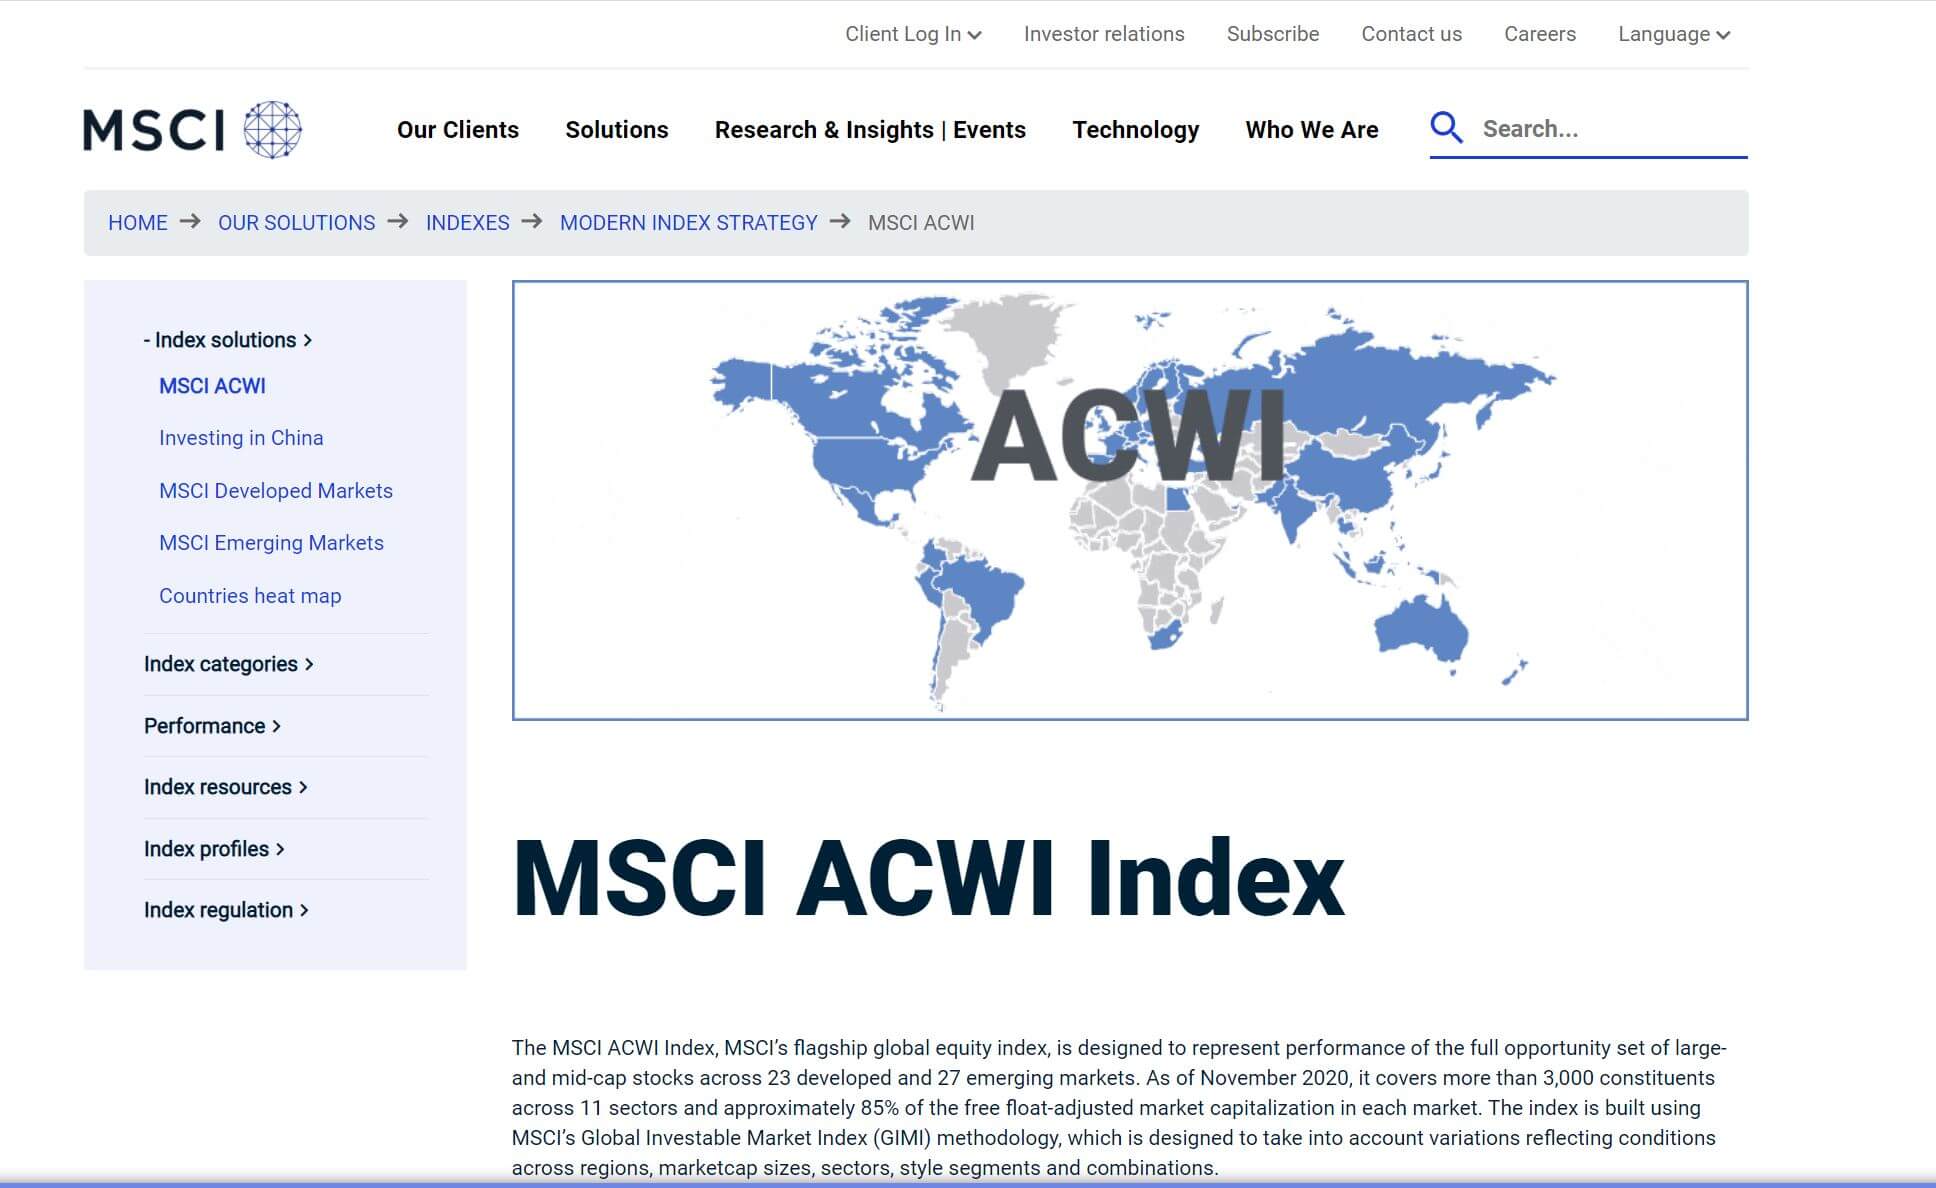 MSCI ACWI Index